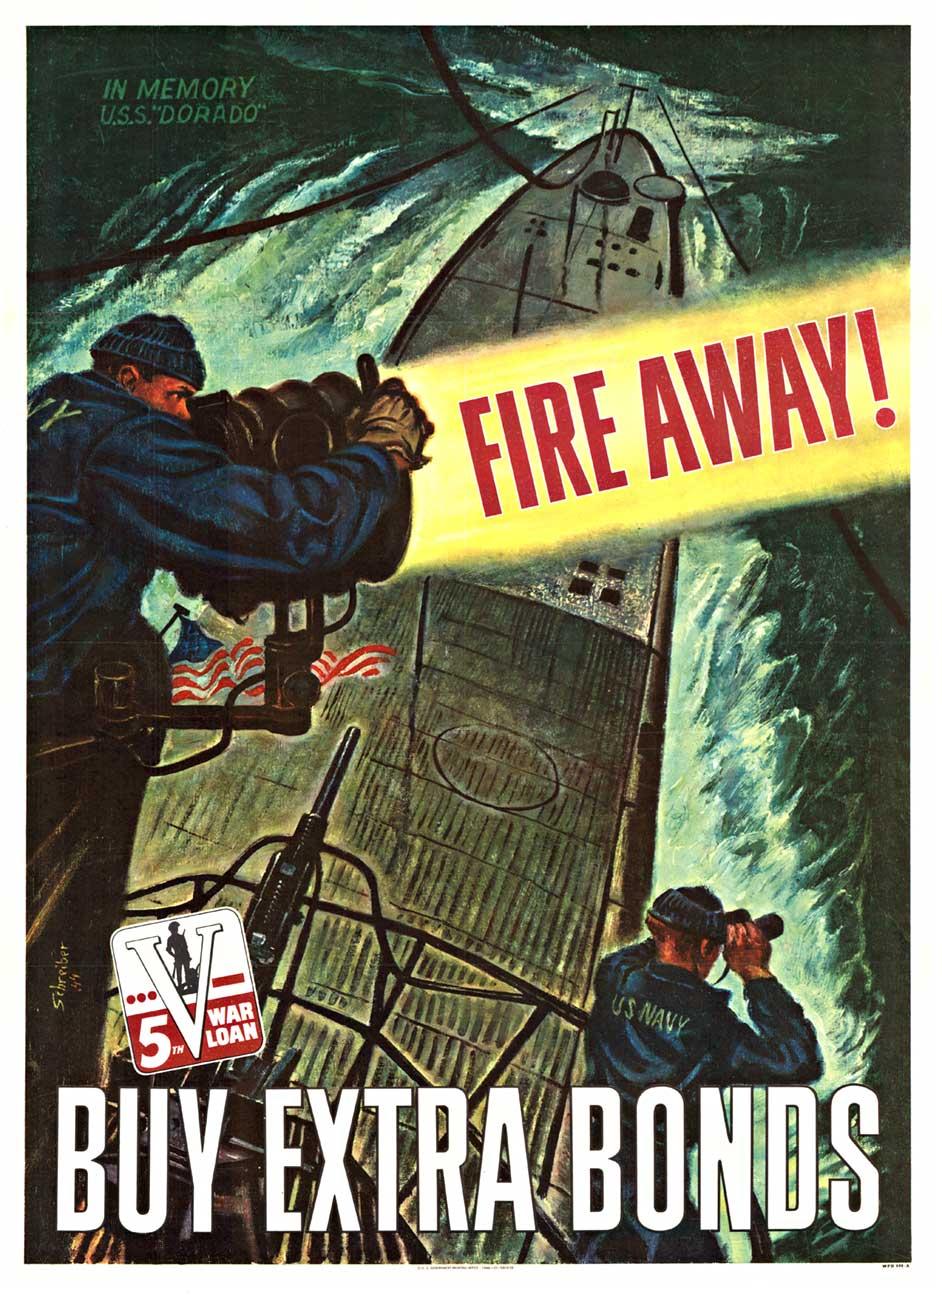 Landscape Print Georges Schreiber - Original Fire Away! Buy Extra Bonds, 5th War Loan" (Achetez des obligations supplémentaires, 5e emprunt de guerre), affiche vintage de sous-marin.